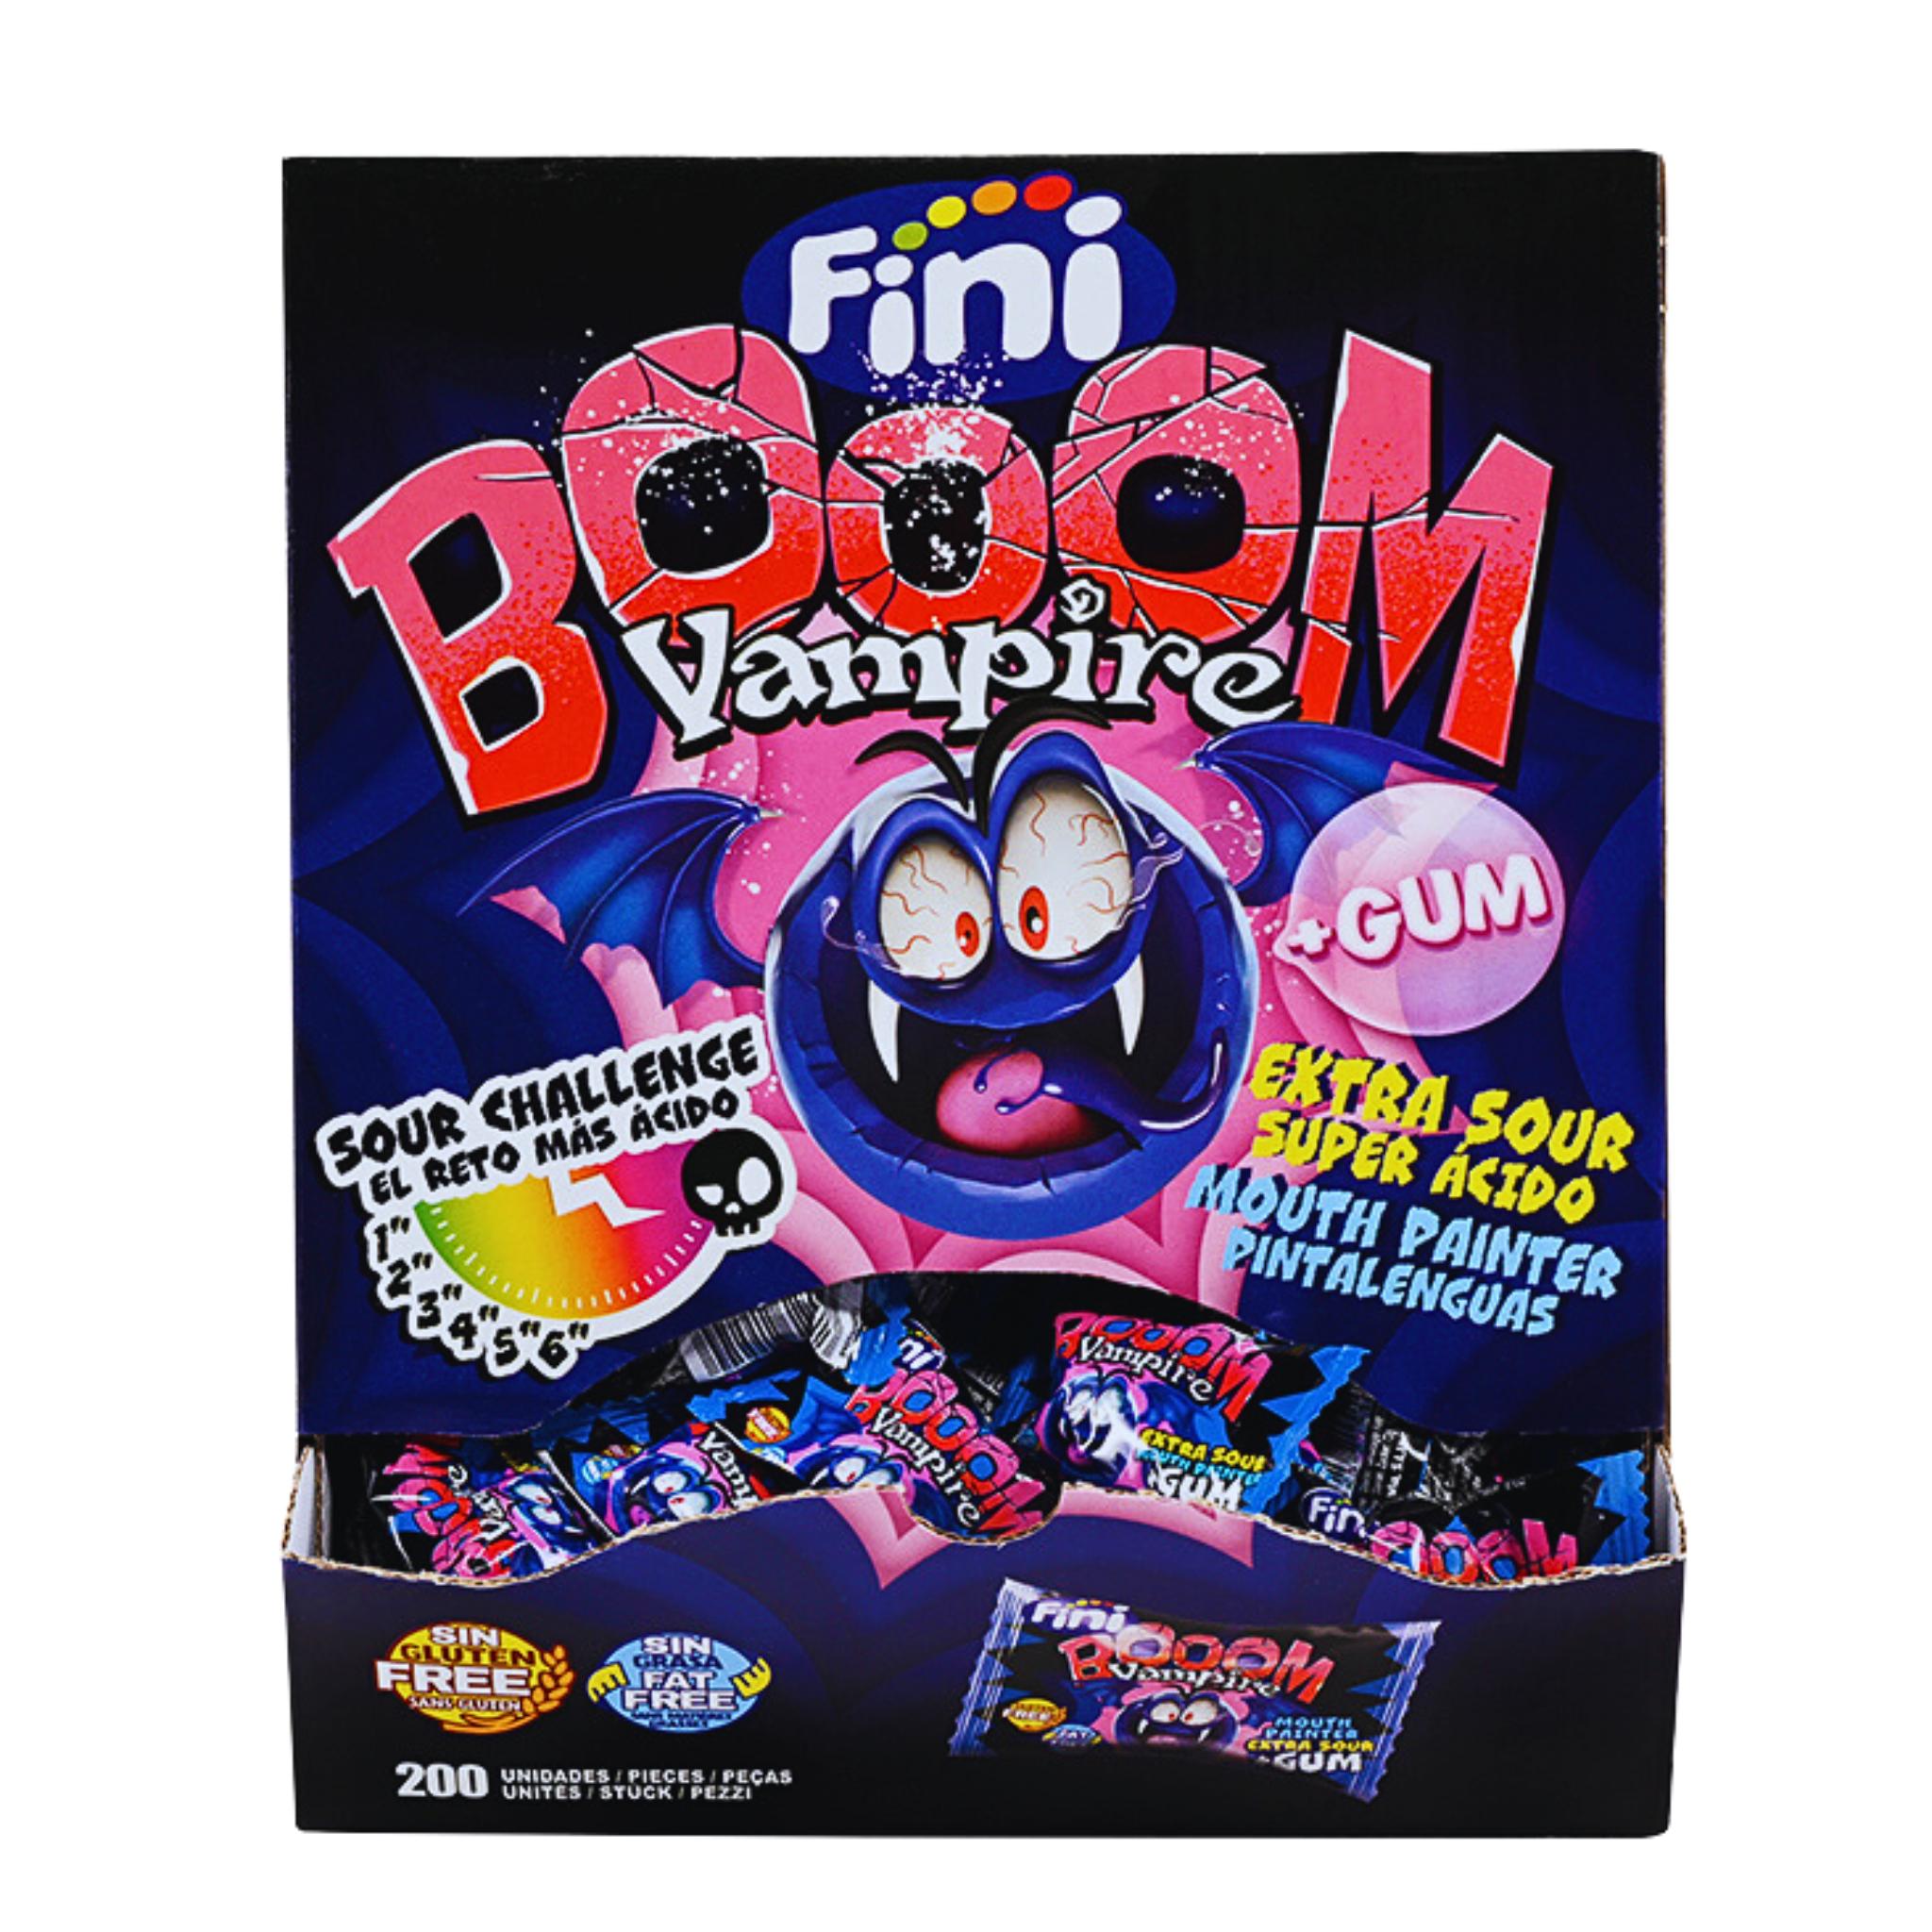 Fini Booom Vampire + Gum - 5g